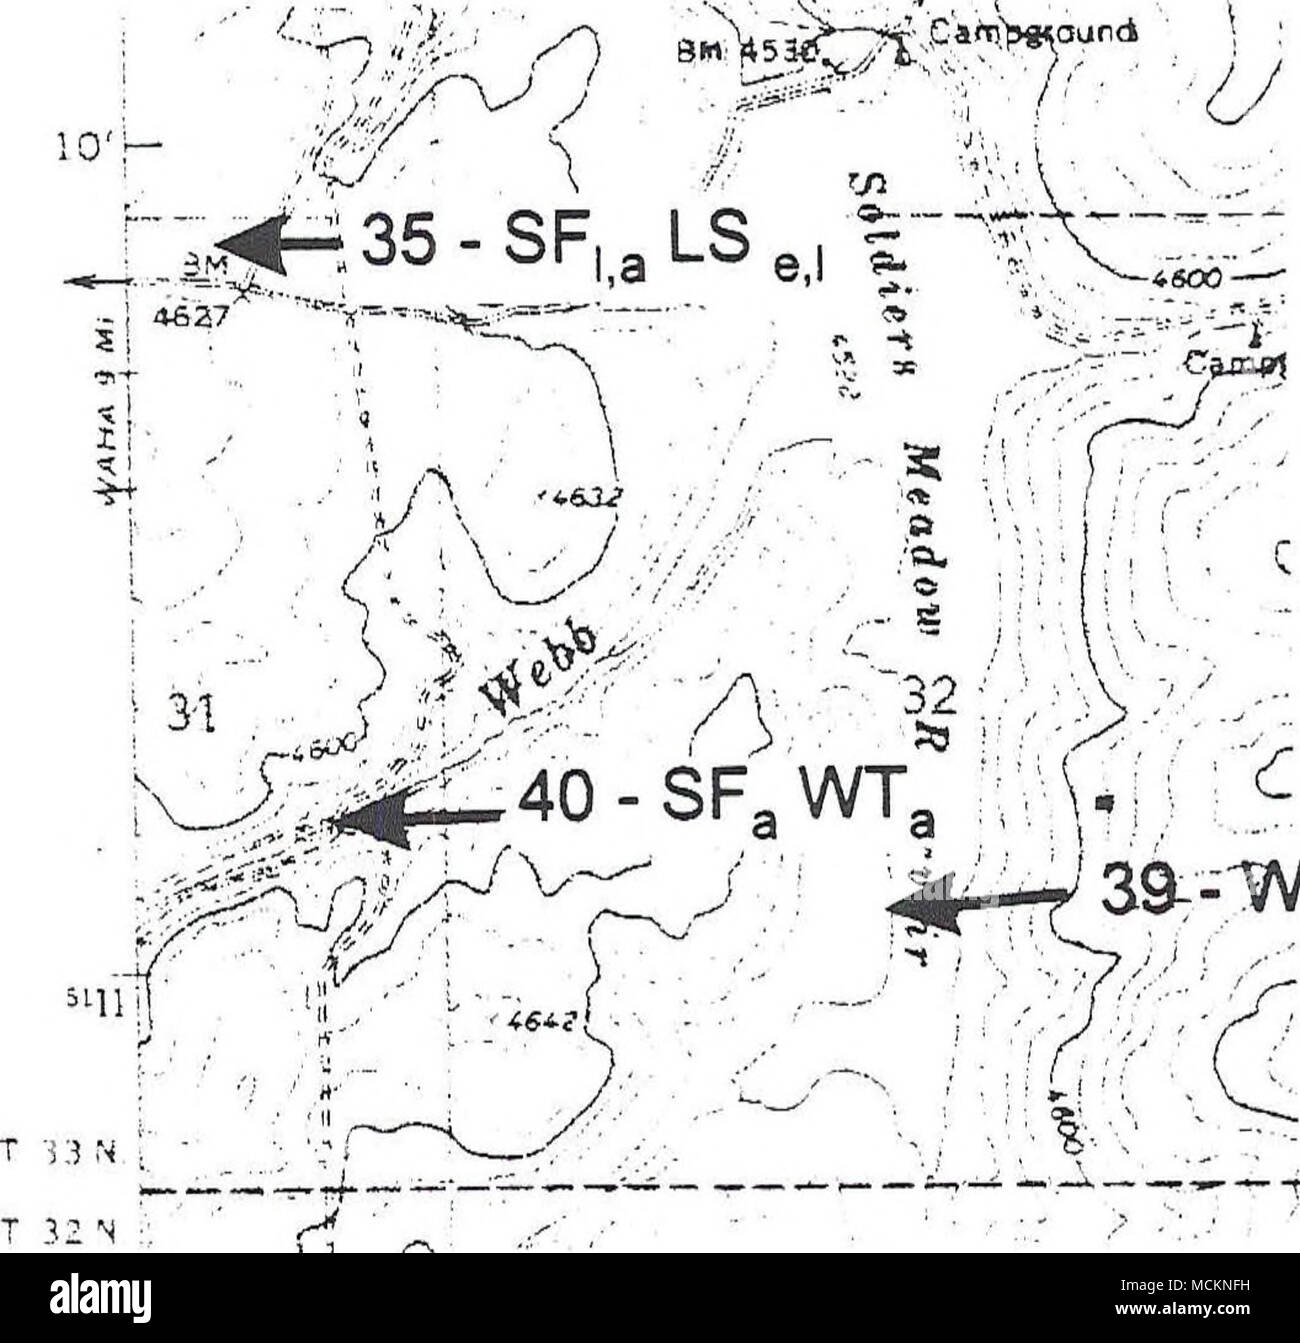 . 39T--WT, e,l,a w A 1 km LS = Long-toed Salamander WT = occidentale (boreale) Toad PT = Pacific Treefrog SF = Rana maculato TG = Western Terrestrial Garter Snake CG - Comune Garter Snake a = adulti(s) c = chiamando e = uova 1 = larve o girini m = metamorphs (anfibi) Figura 46 Ubicazione di stagni e gli anfibi e rettili dal 1994 e 1995 indagini, la mappa v è scansionato da Winchester West un quadrangolo 7.5 minuto serie (carte topografiche) 1986 mappa. Lettere maiuscole indicano specie. Piccolo caso lettere indicano fasi di vita. Vedere la legenda sopra. Foto Stock